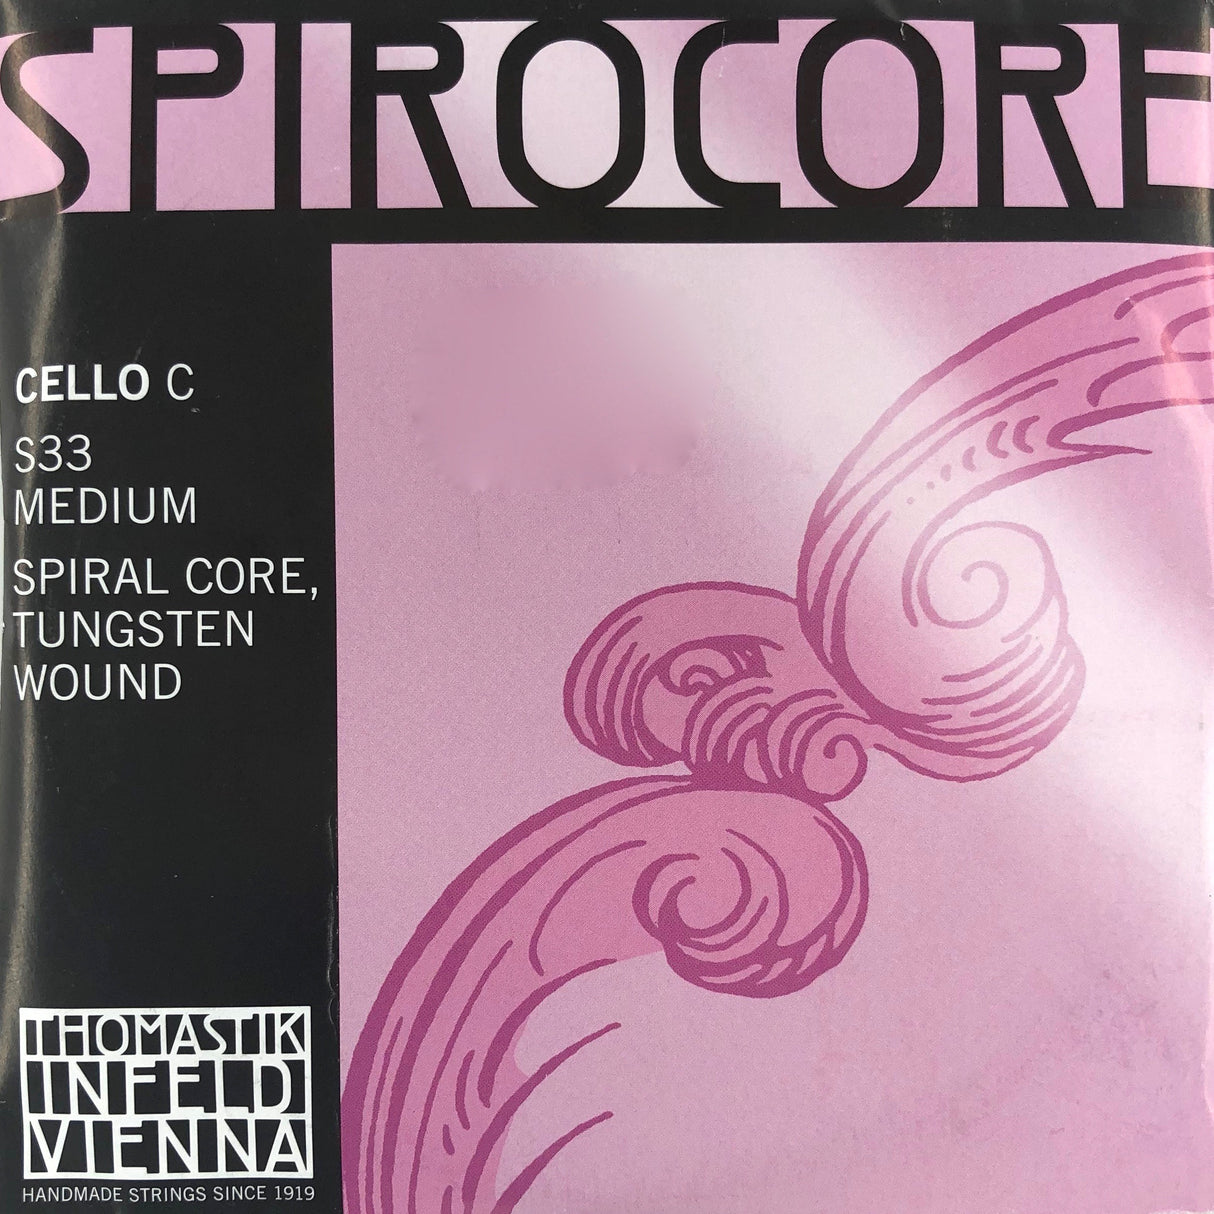 Thomastik Spirocore Cello Einzelsaite C mit Kugel Medium 4/4 - Musik-Ebert Gmbh